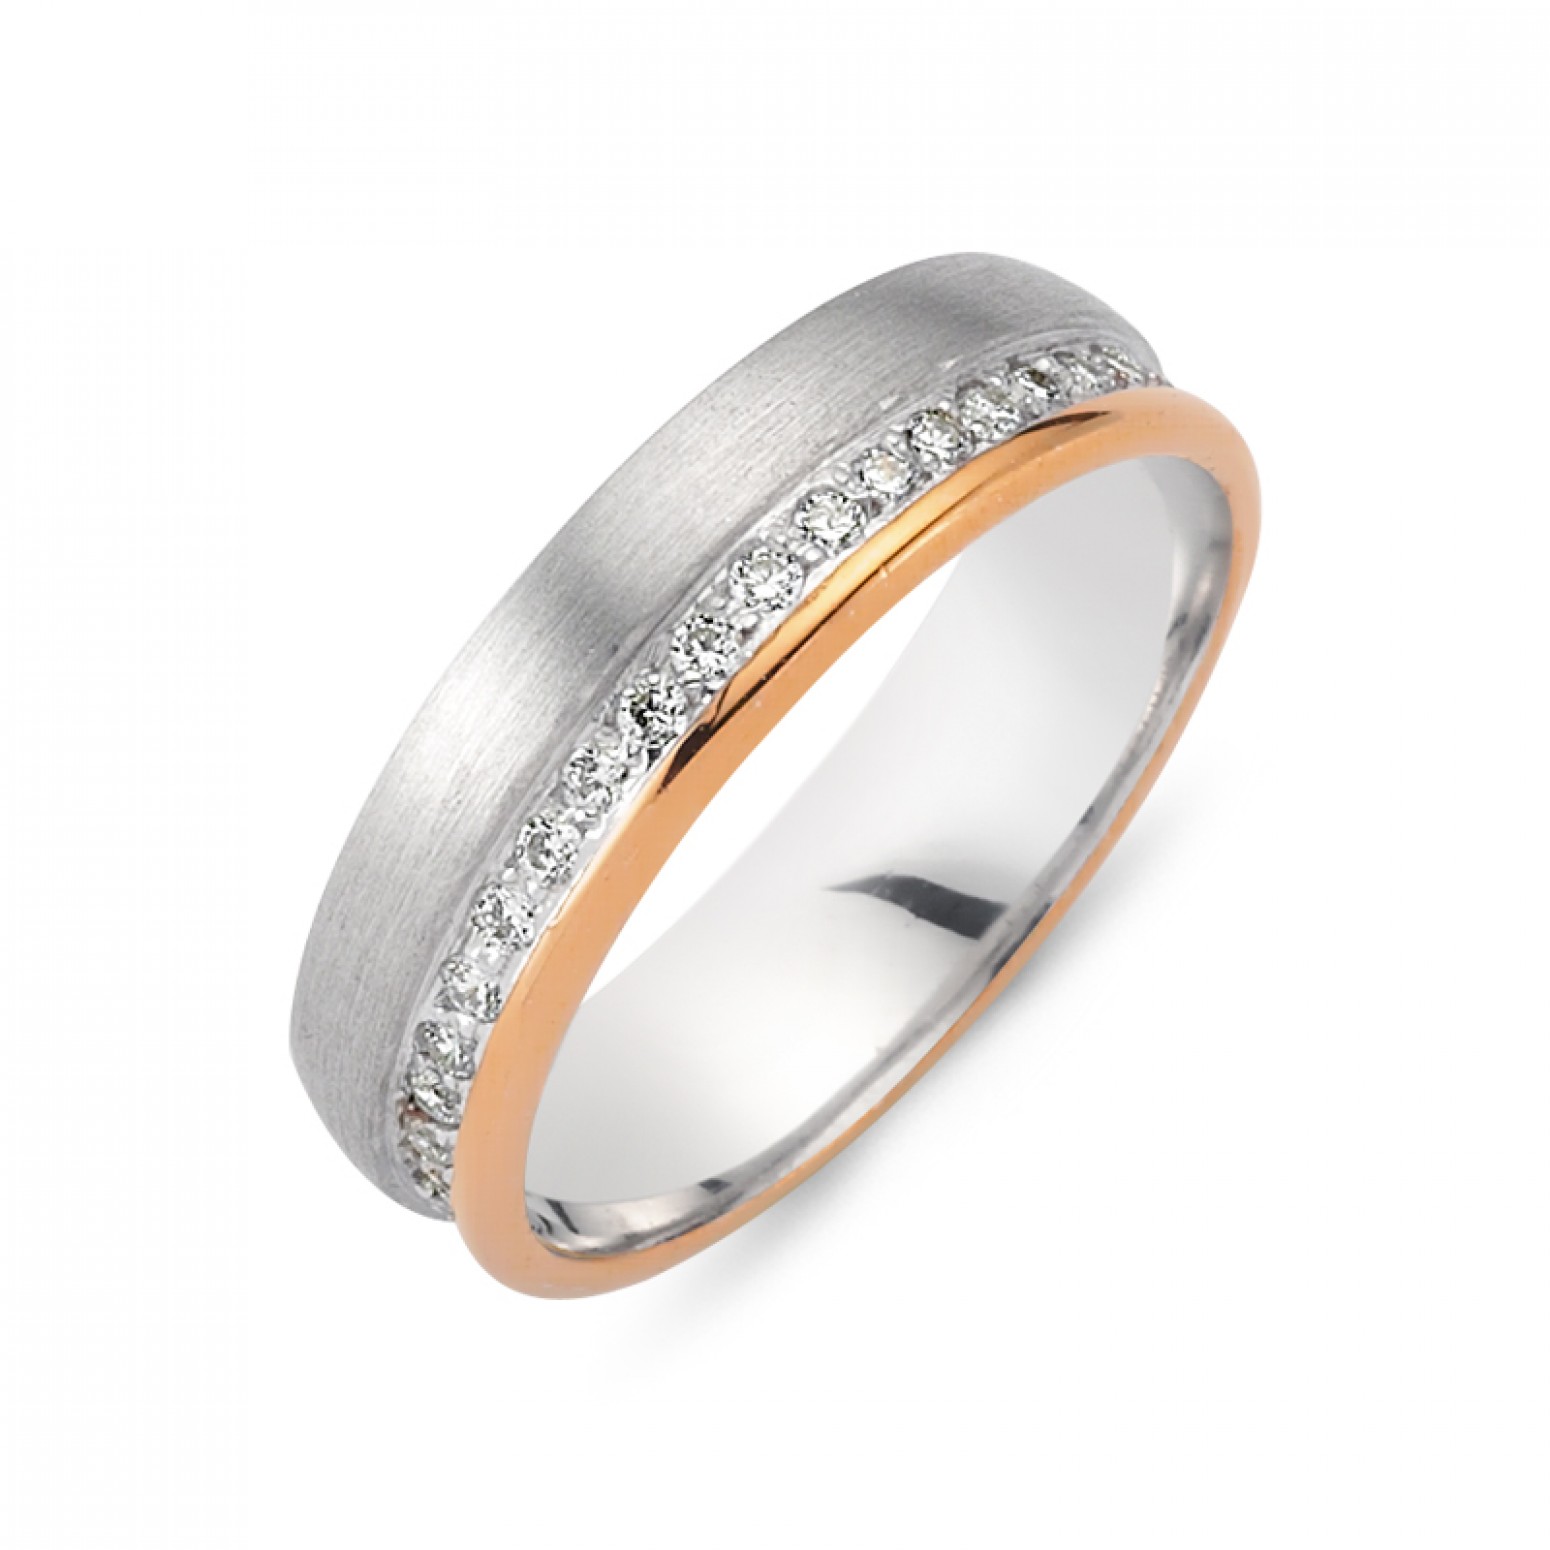 Chrilia wedding rings in white & pink gold, K14, pair da2791 WEDDING RINGS Κοσμηματα - chrilia.gr